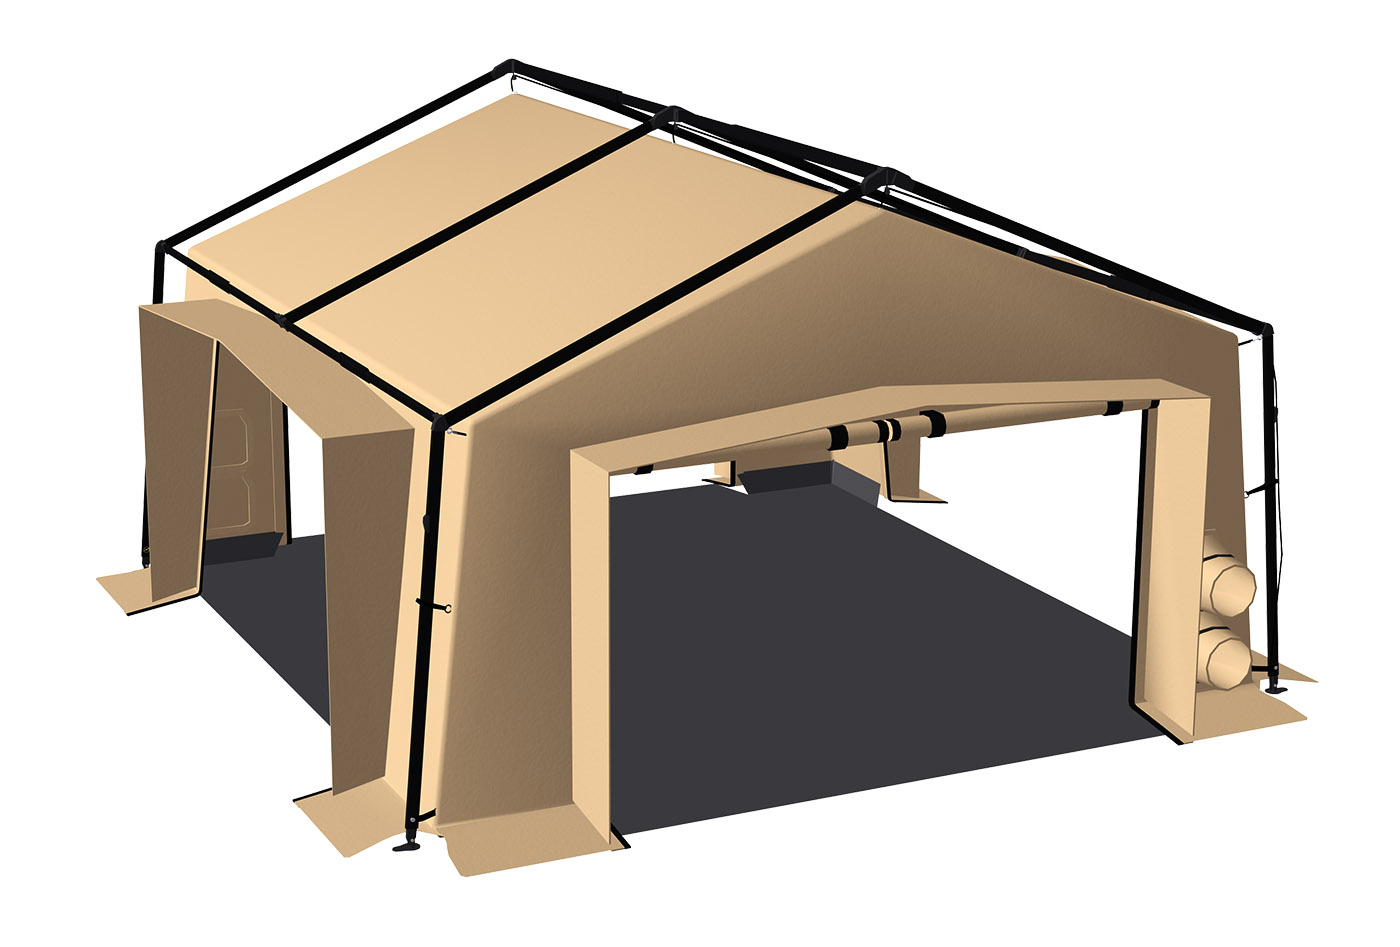  Tente militaire 30 m², modèle V30PC